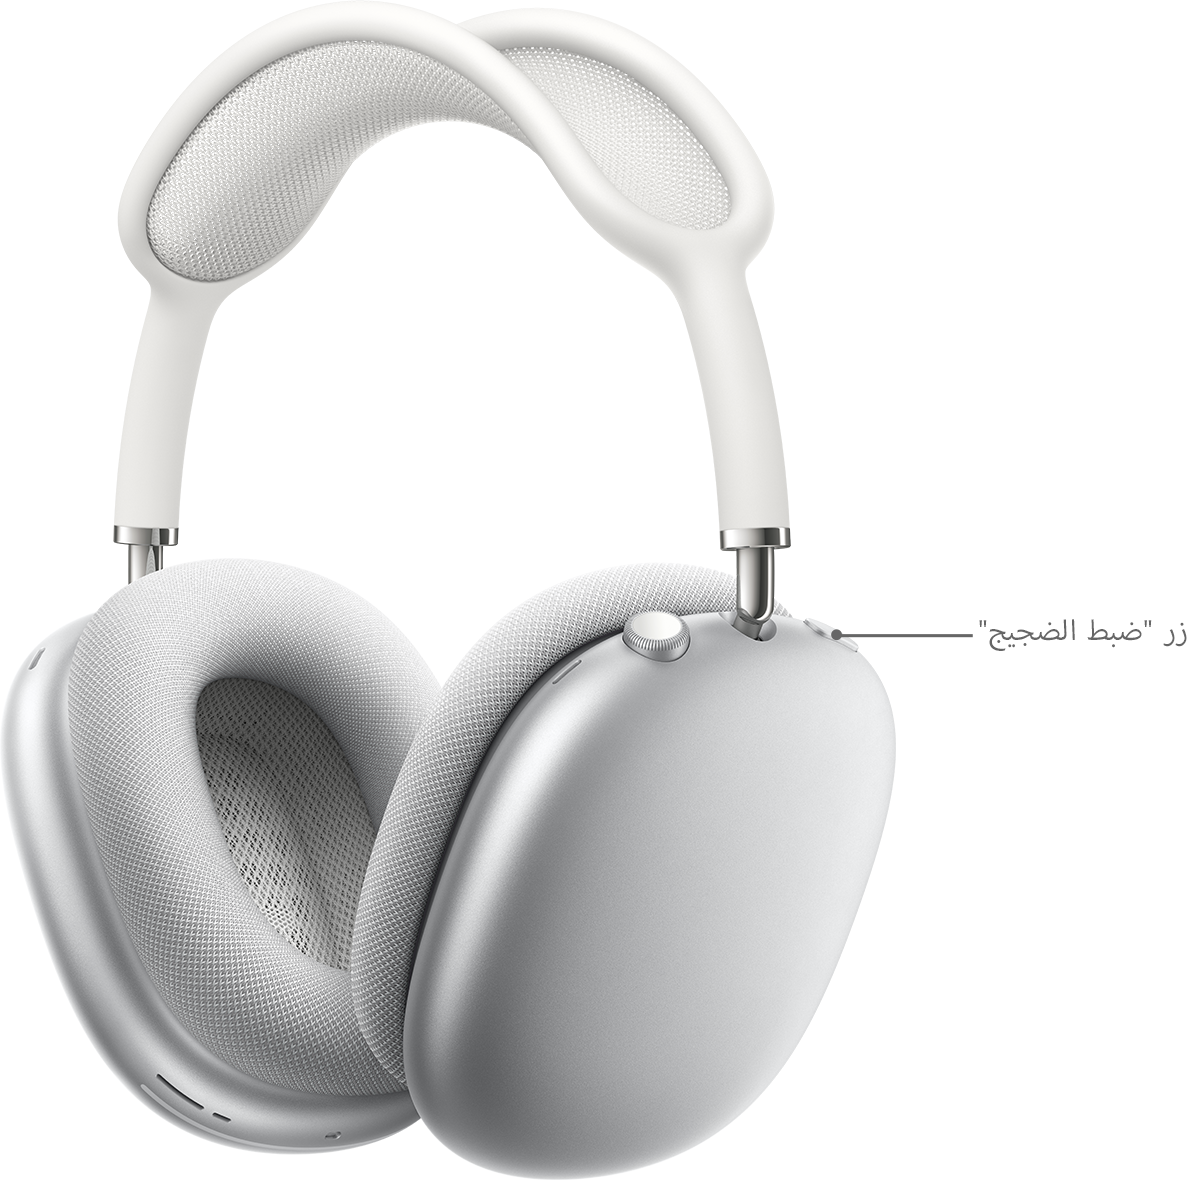 إلغاء الضجيج الفعّال ونمط شفافية الصوت في AirPods Pro وAirPods Max - Apple  الدعم (BH)